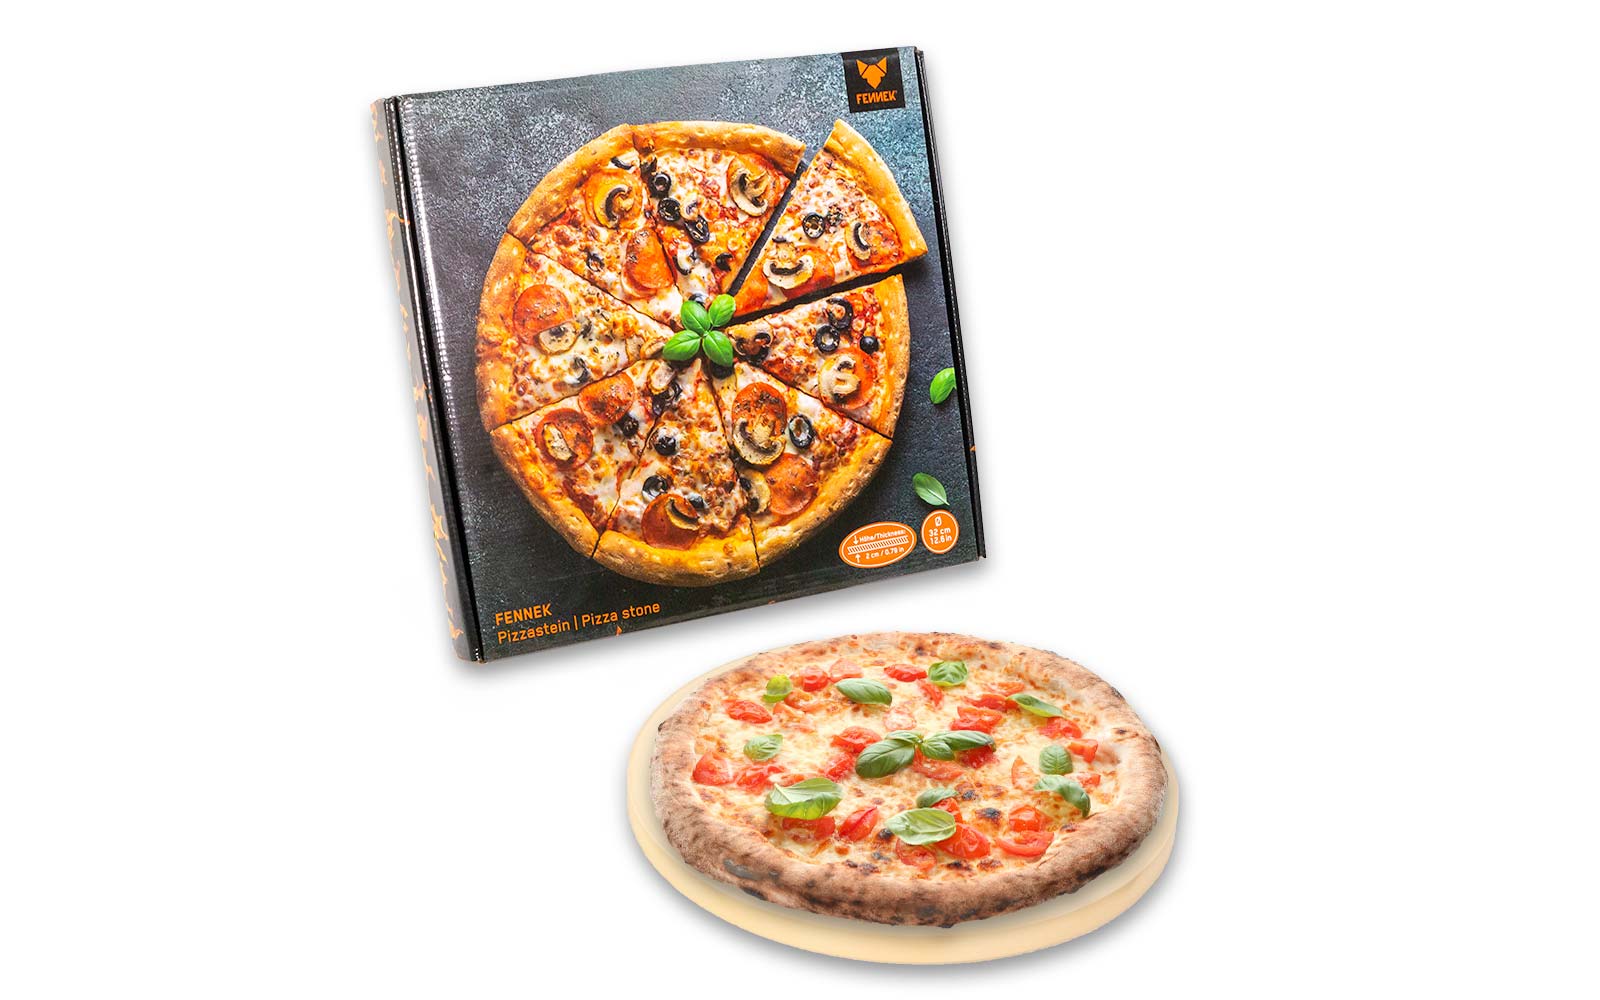 Mit einer Pizza bedruckter Karton als Produktverpackung für den Pizzastein und davor ein frischgebackene Pizza die auf dem Pizzastein liegt auf weißem Hintergrund.